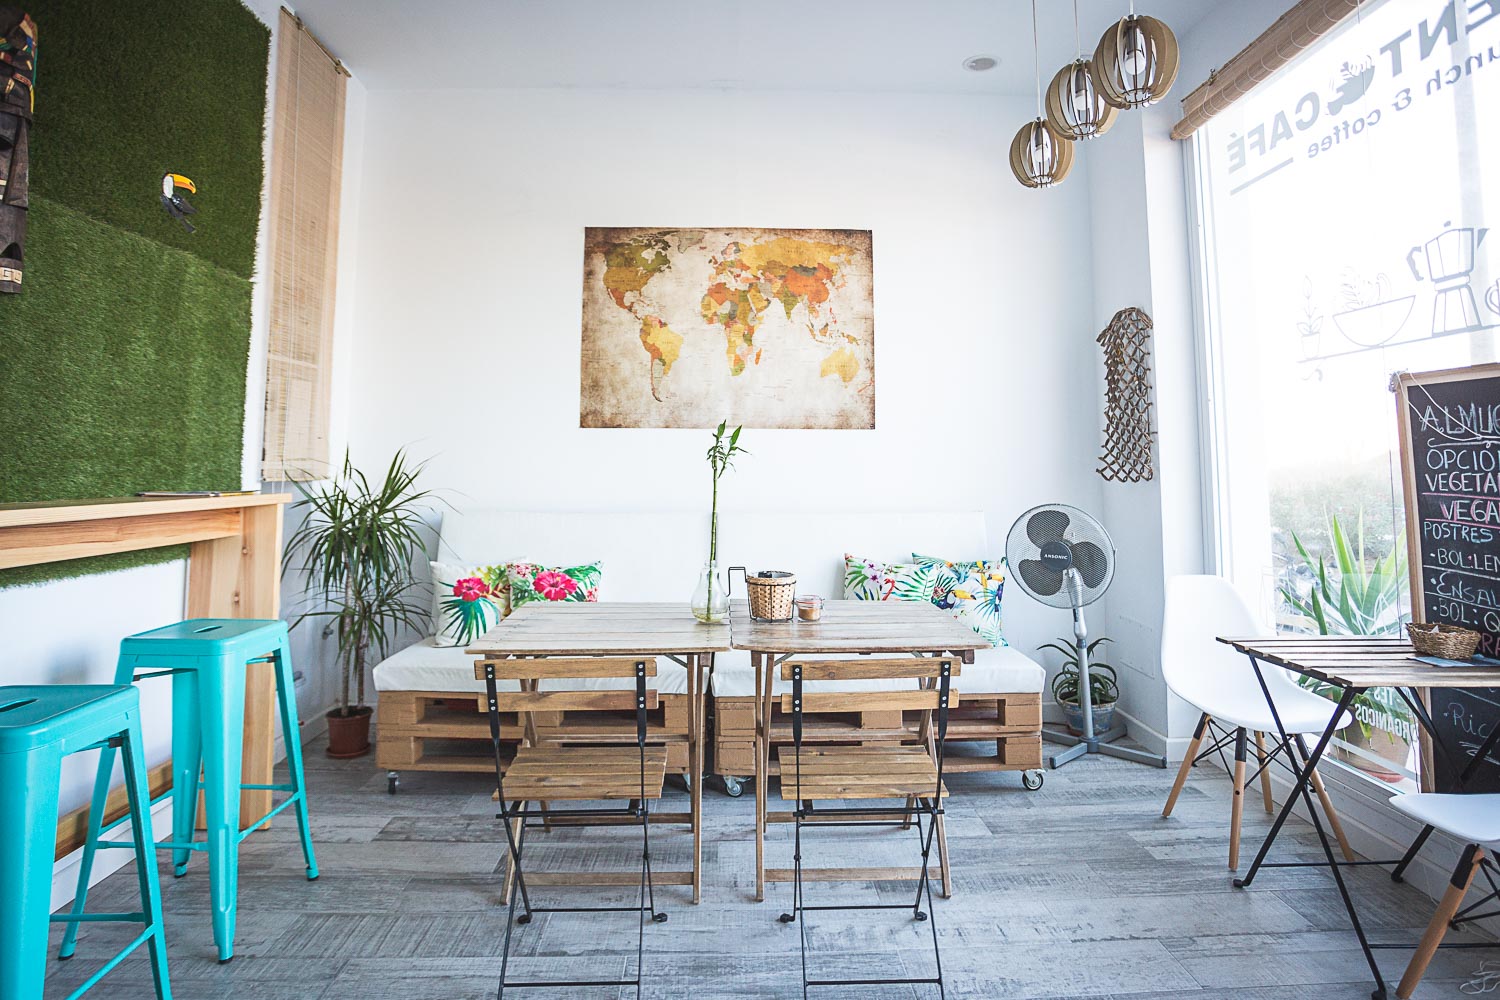 Local adaptado a cafetería, su apertura y conexión entre espacios, genera confort y luminosidad.